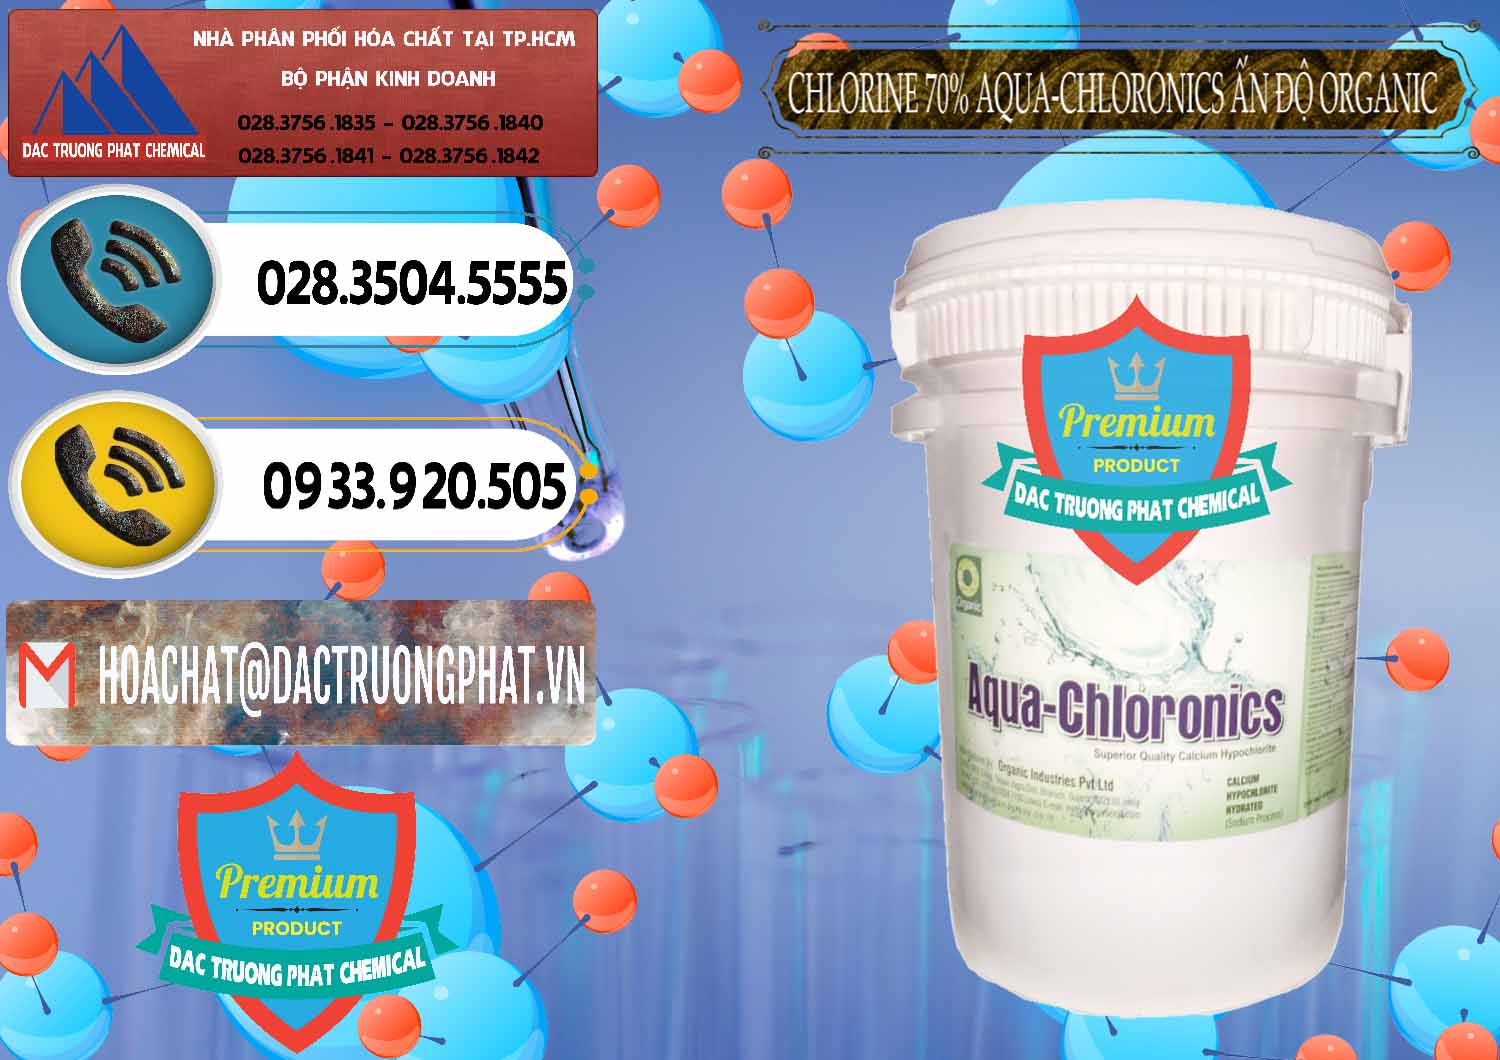 Cty phân phối ( bán ) Chlorine – Clorin 70% Aqua-Chloronics Ấn Độ Organic India - 0211 - Cty bán và cung cấp hóa chất tại TP.HCM - hoachatdetnhuom.vn